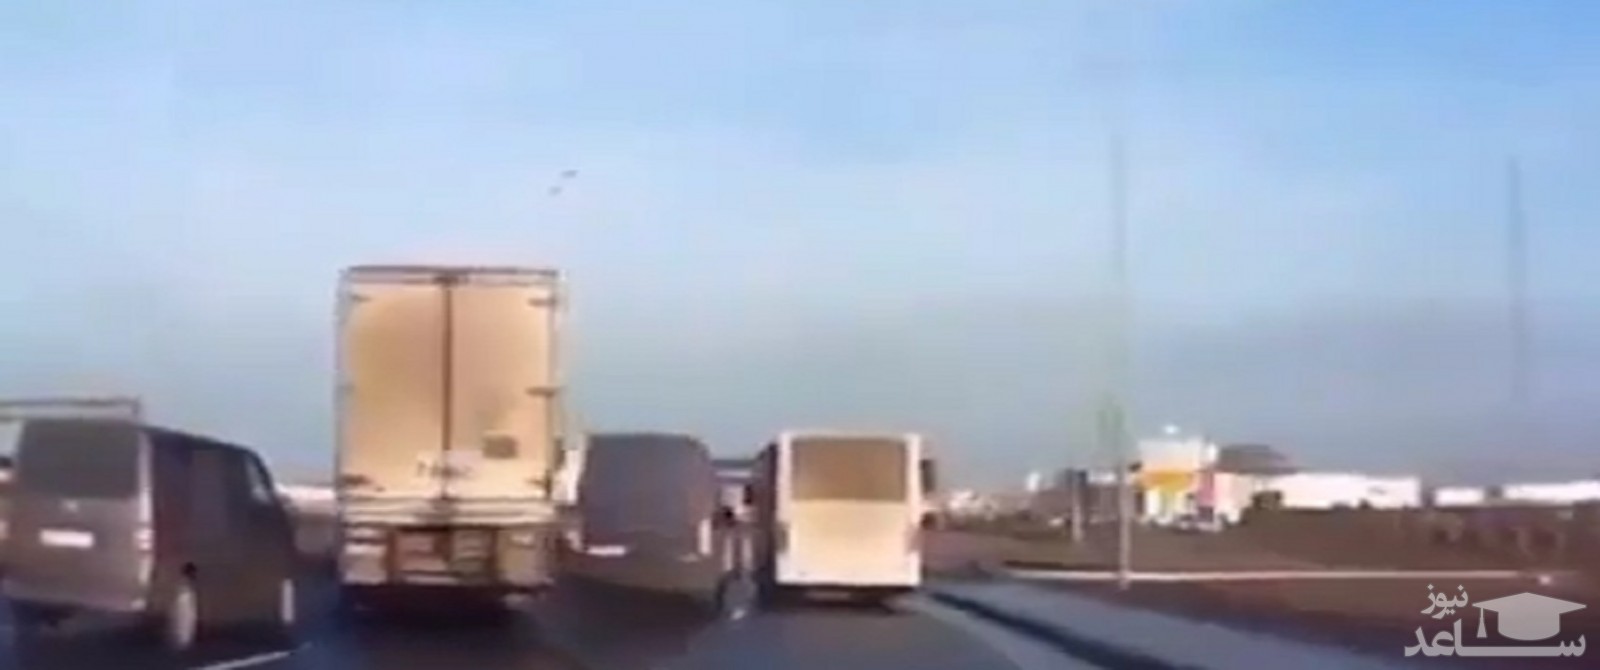 (فیلم) مهارت فوق العاده رانندگان خودروهای سنگین در جاده